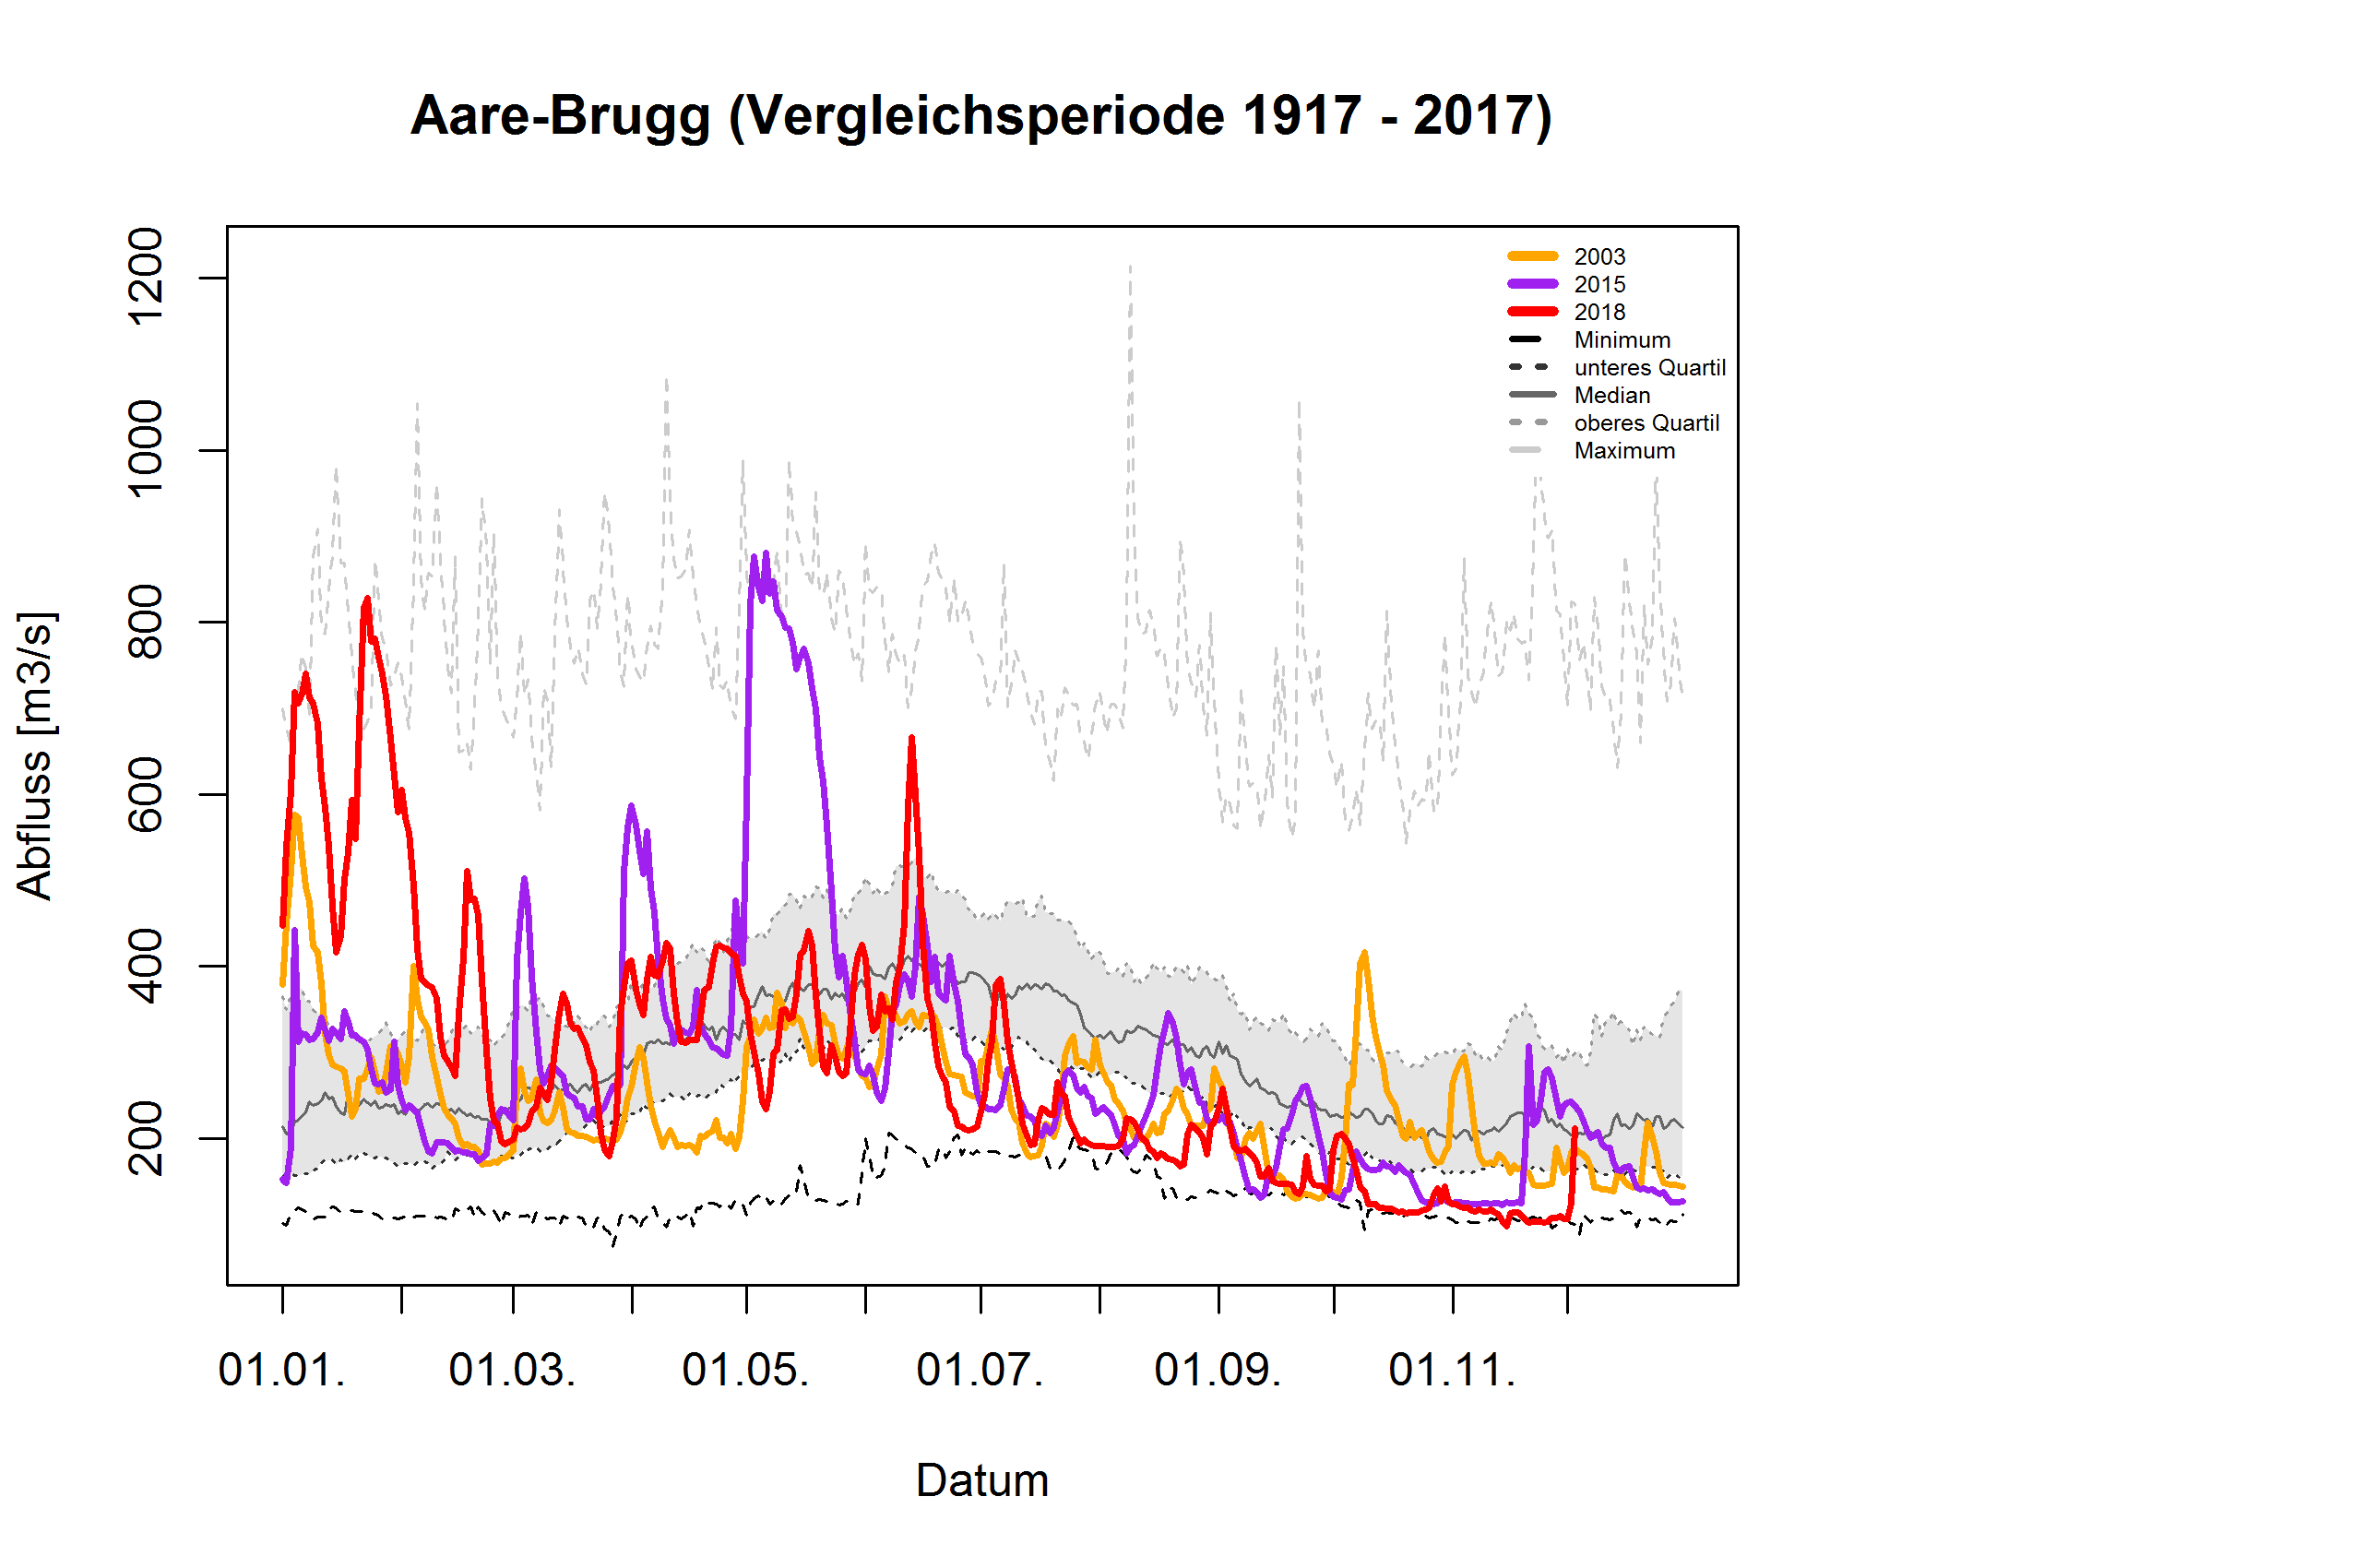 Aare - Brugg: Vergleichsperiode 1935 - 2017